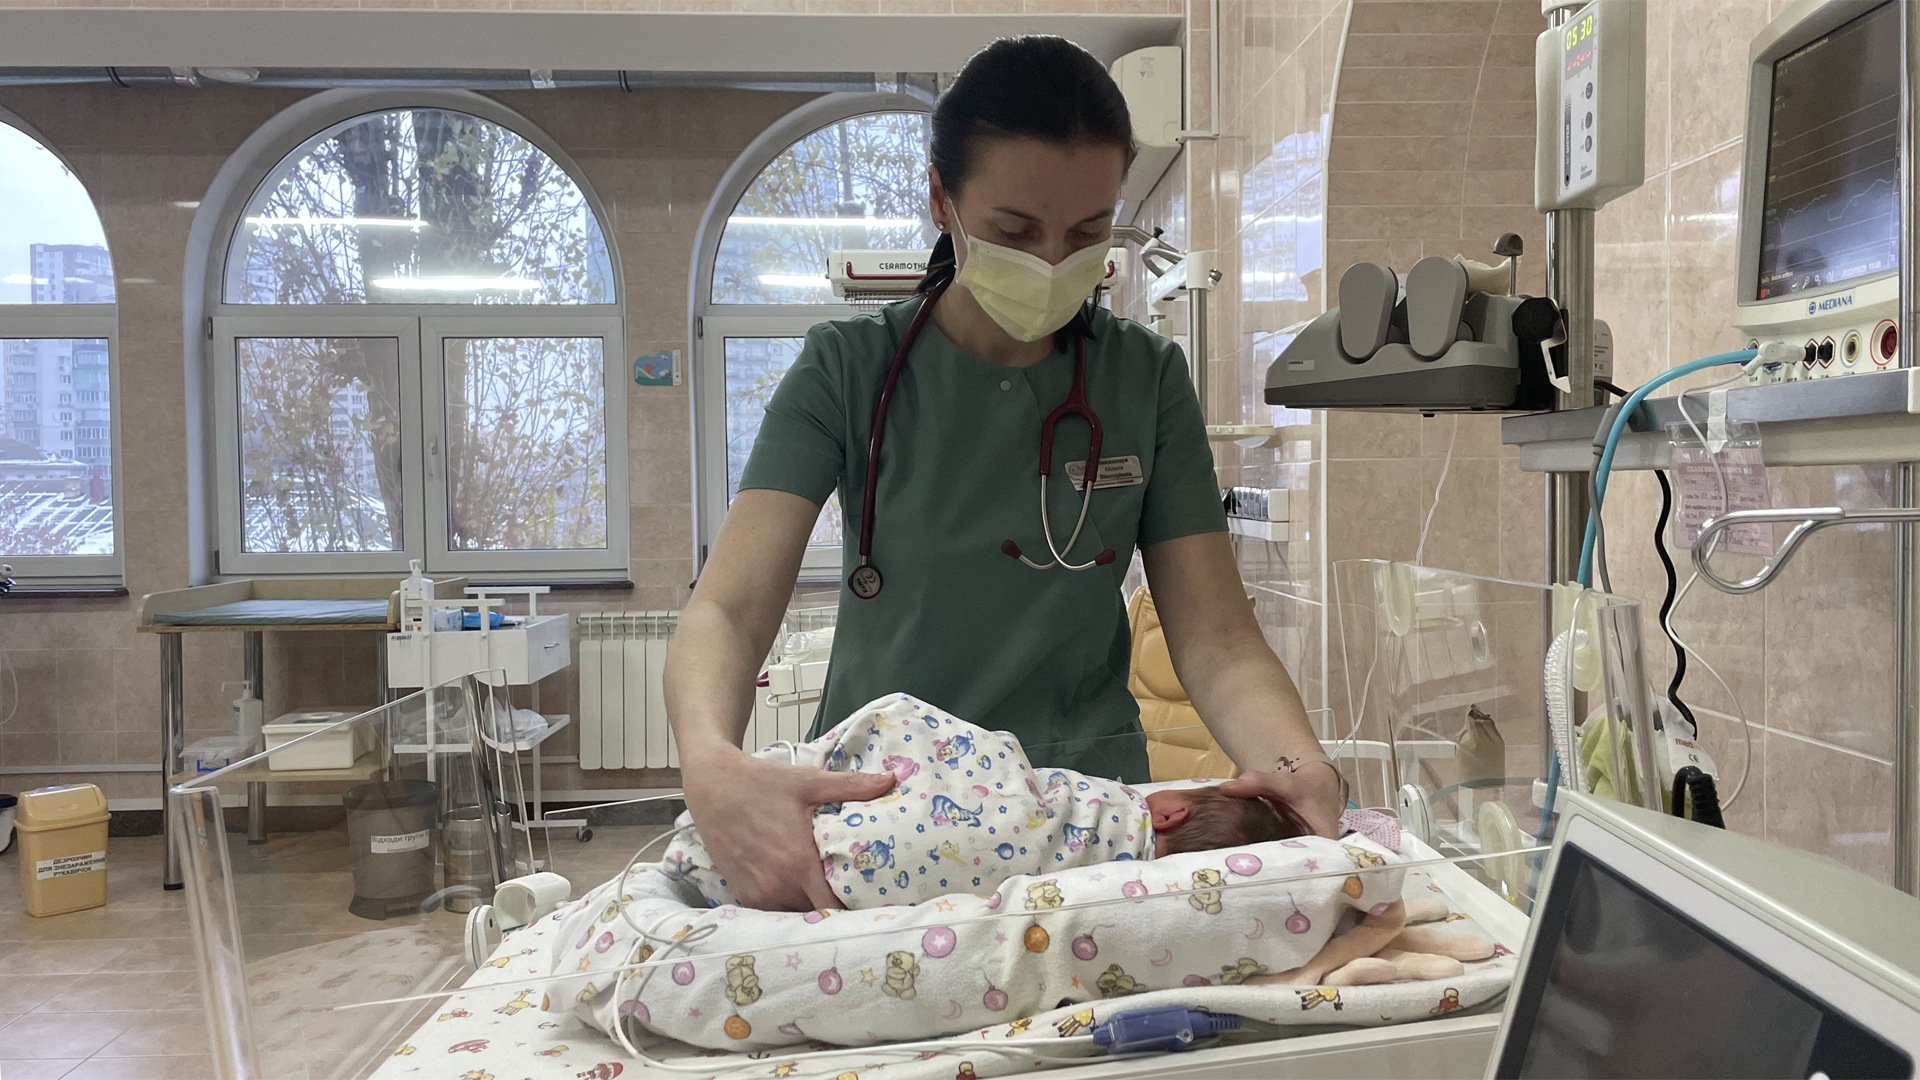 Ärztin Olga Kowaltschuk auf der Frühchen-Station am Bett eines Mädchens das mit 33 Wochen auf die Welt kam. | Andrea Beer